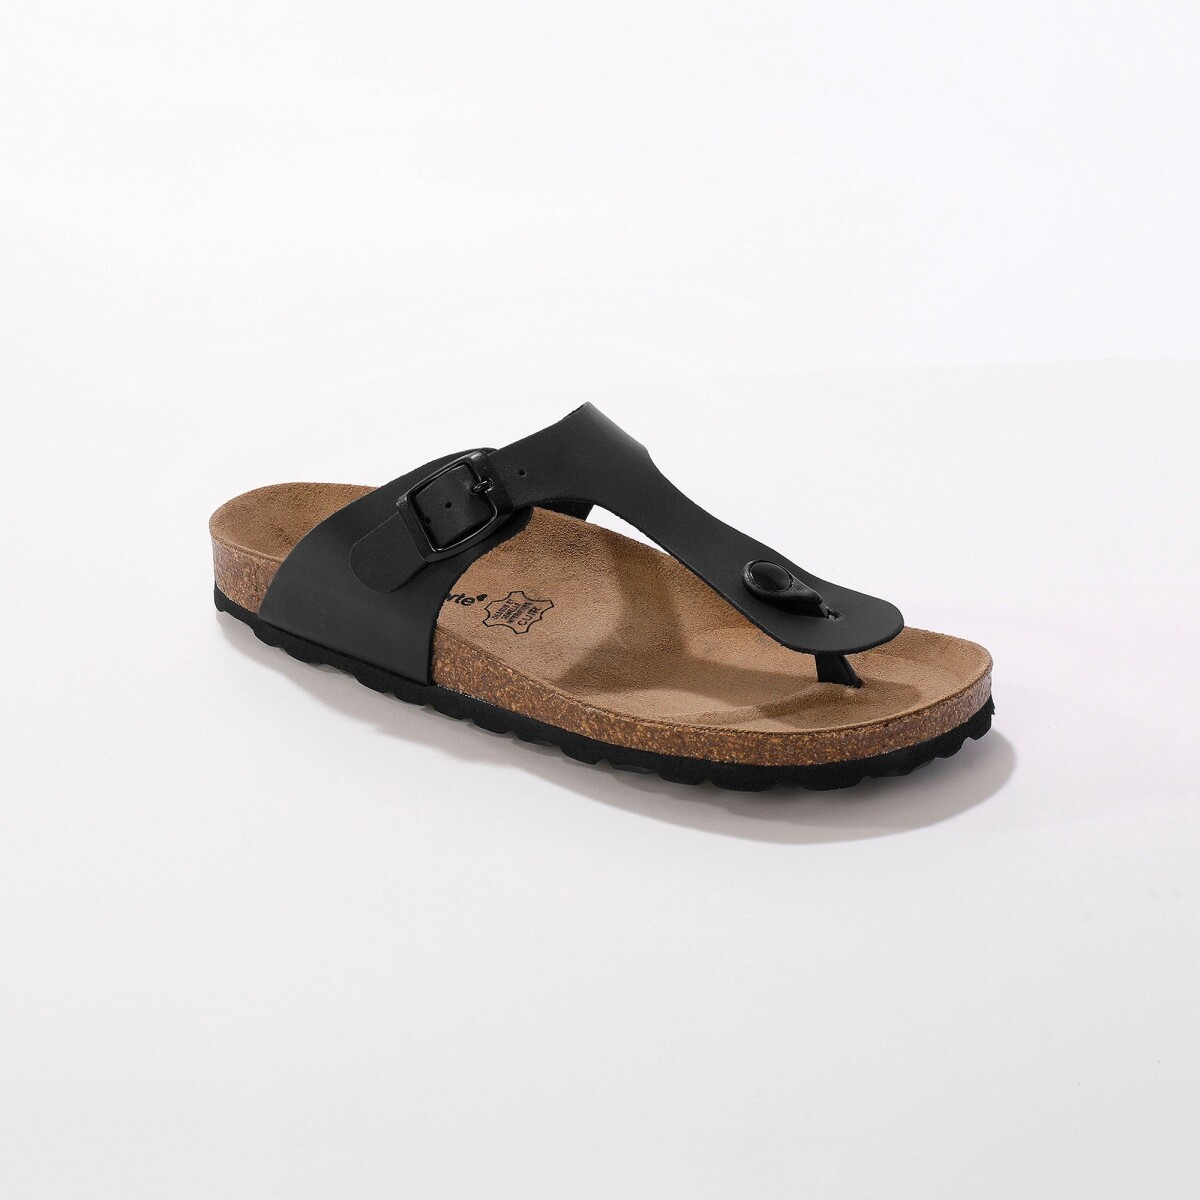 Žabkové kožené sandály se sponou, černé